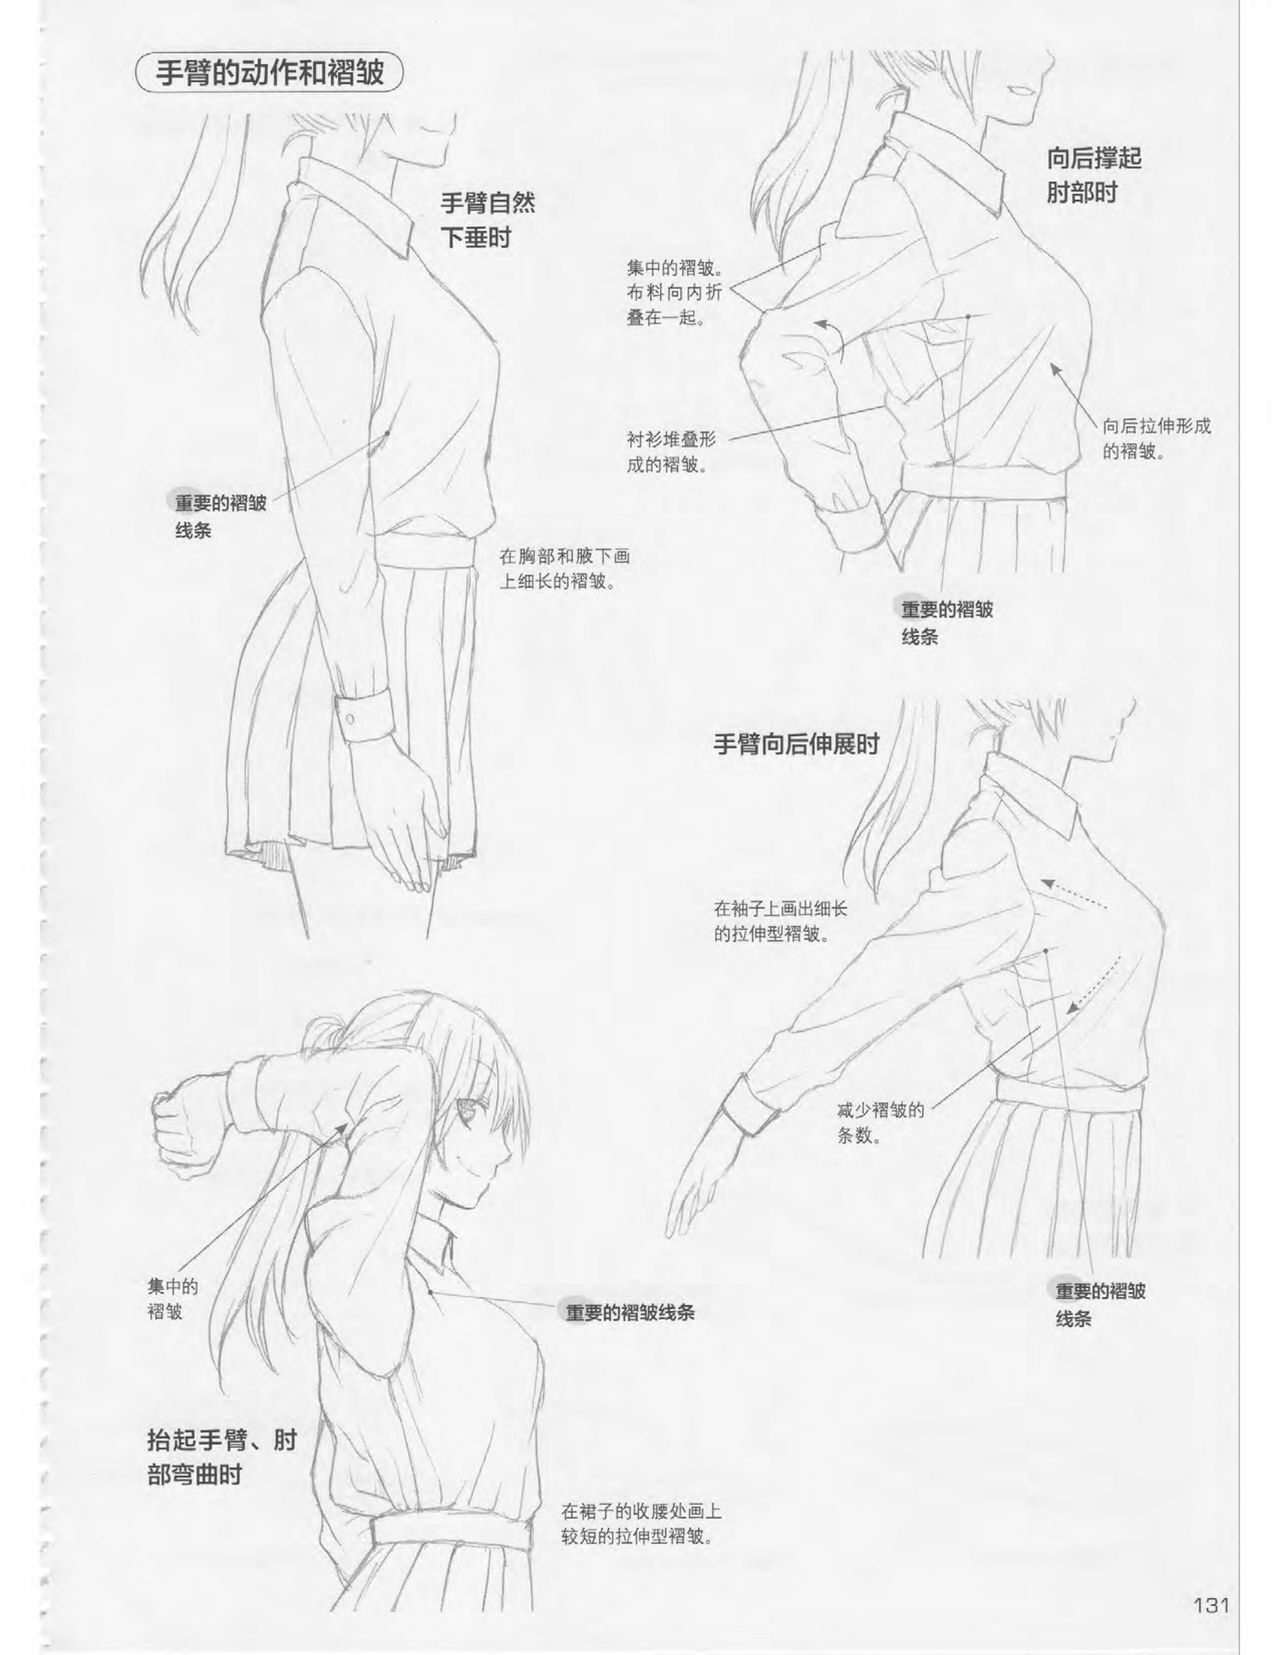 Japanese Manga Master Lecture 3: Lin Akira and Kakumaru Maru Talk About Glamorous Character Modeling 130